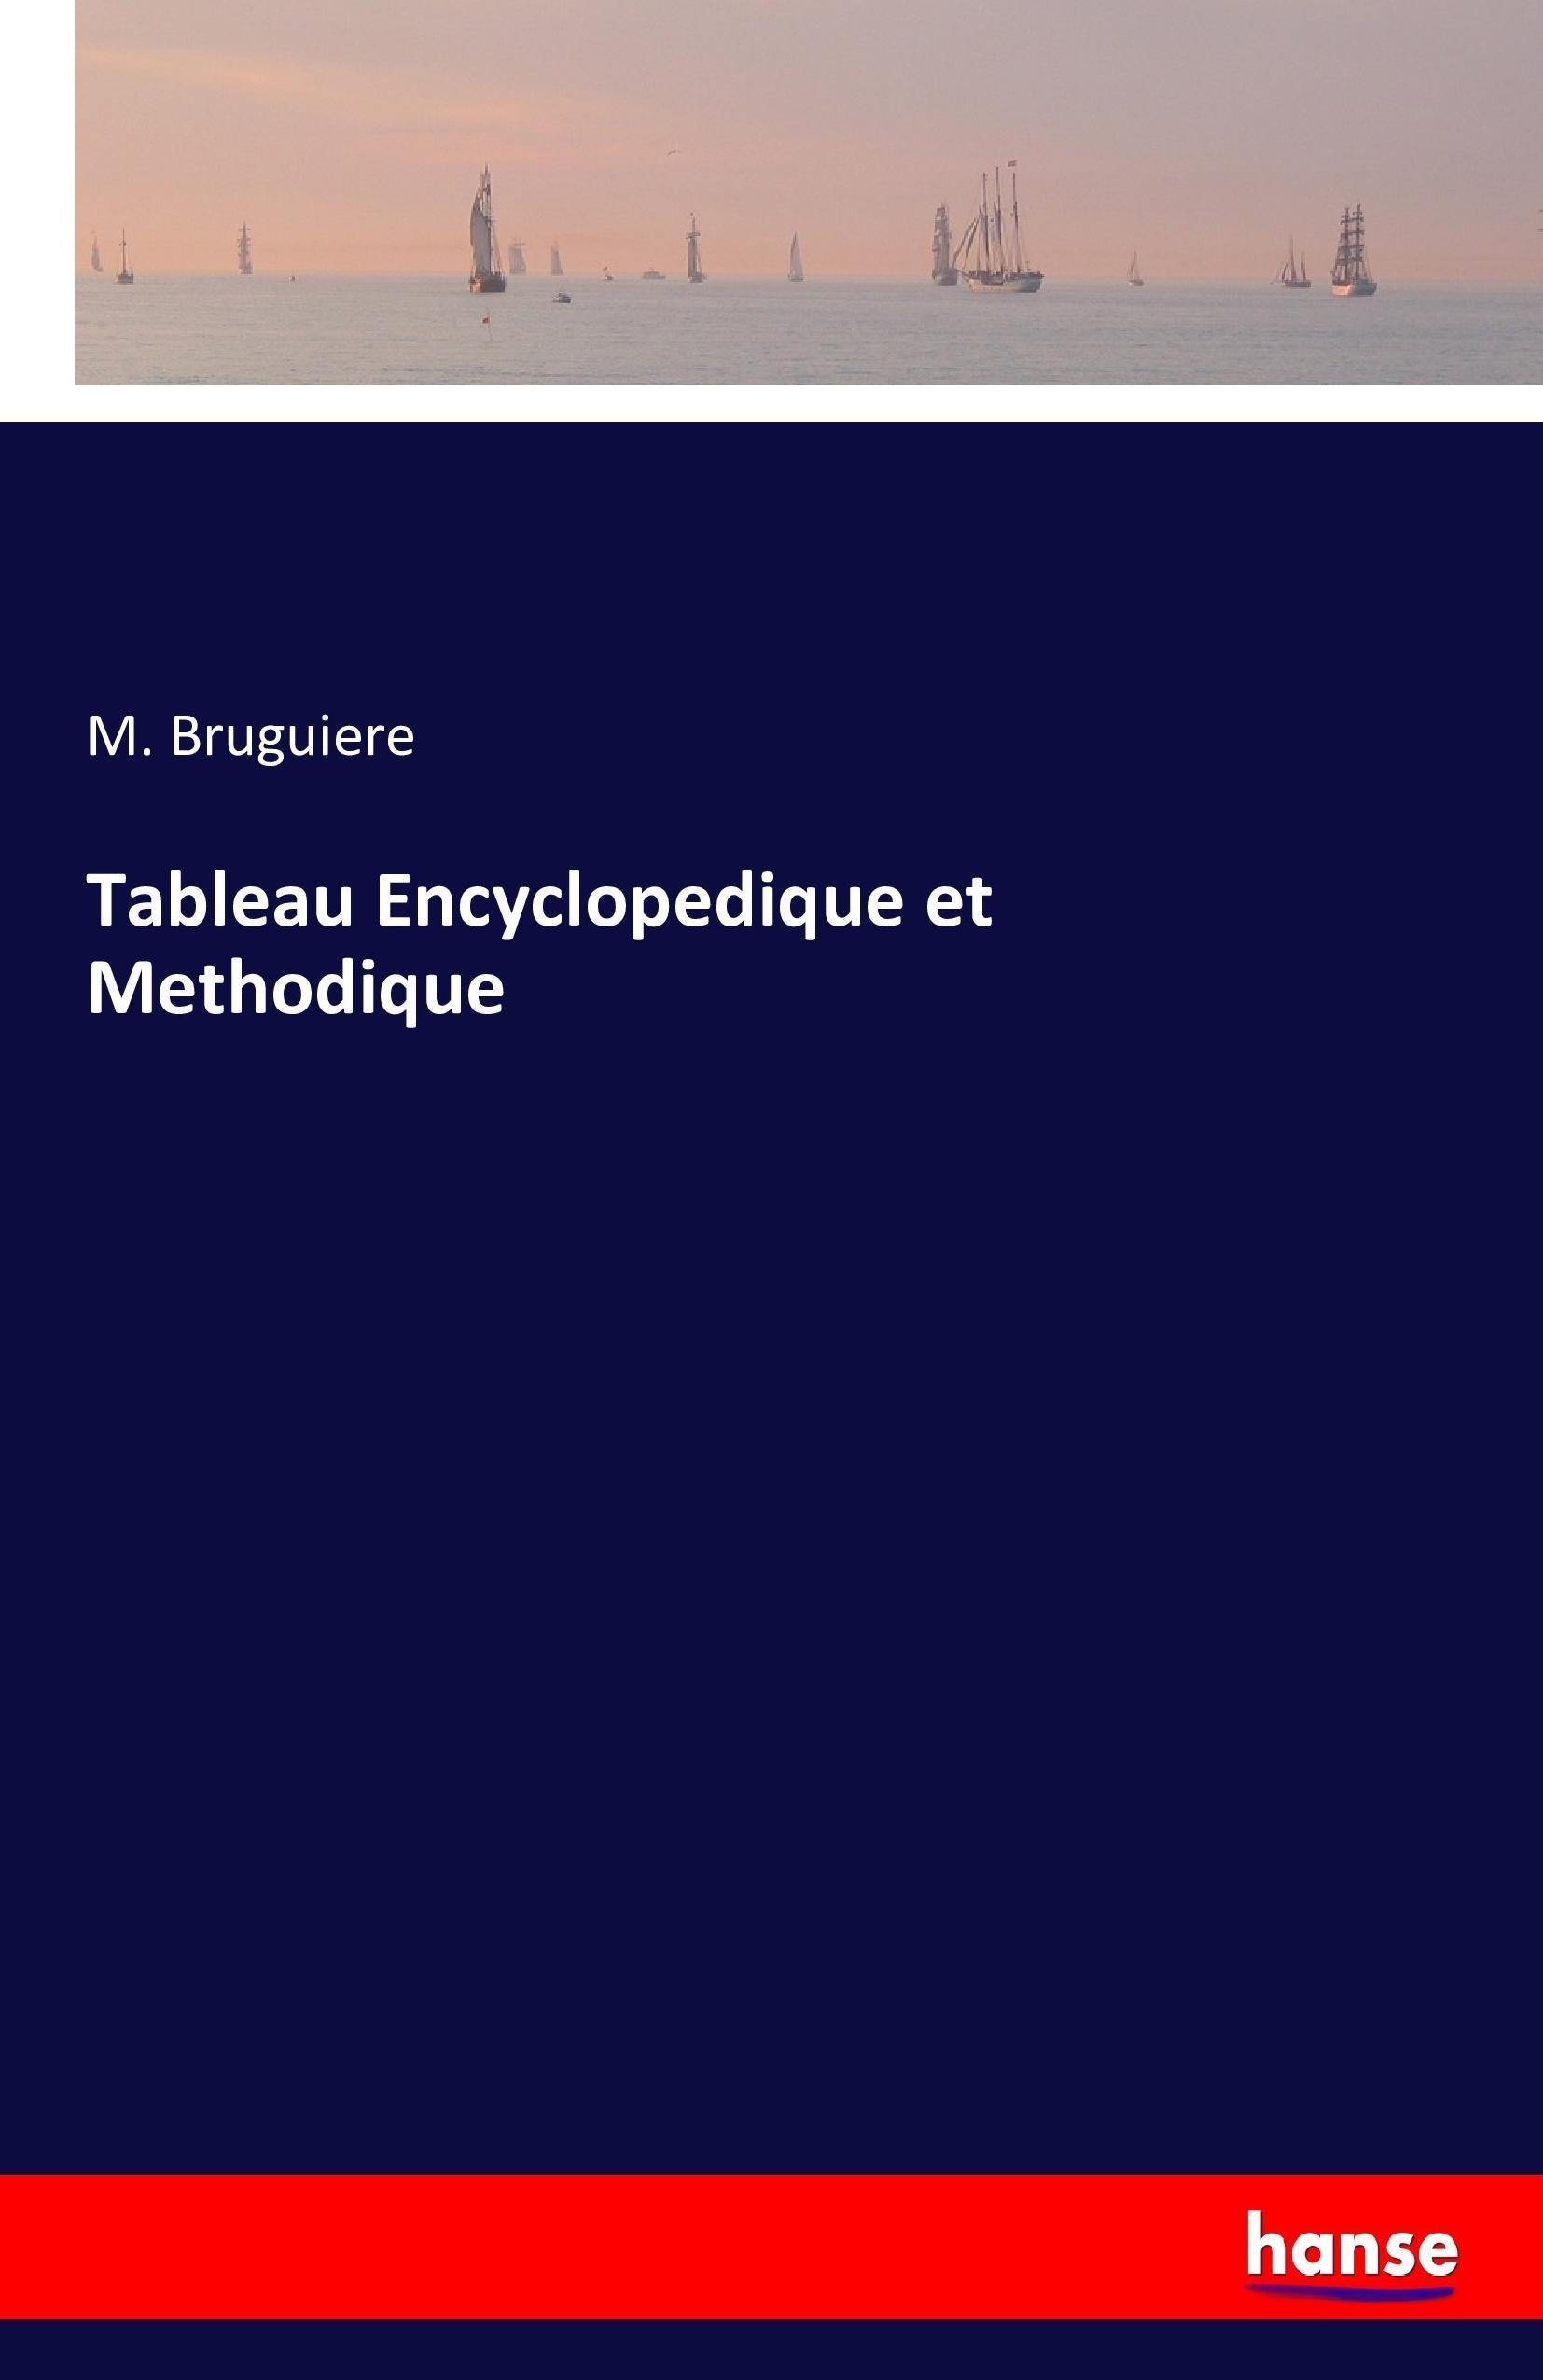 Tableau Encyclopedique et Methodique - Bruguiere, M.